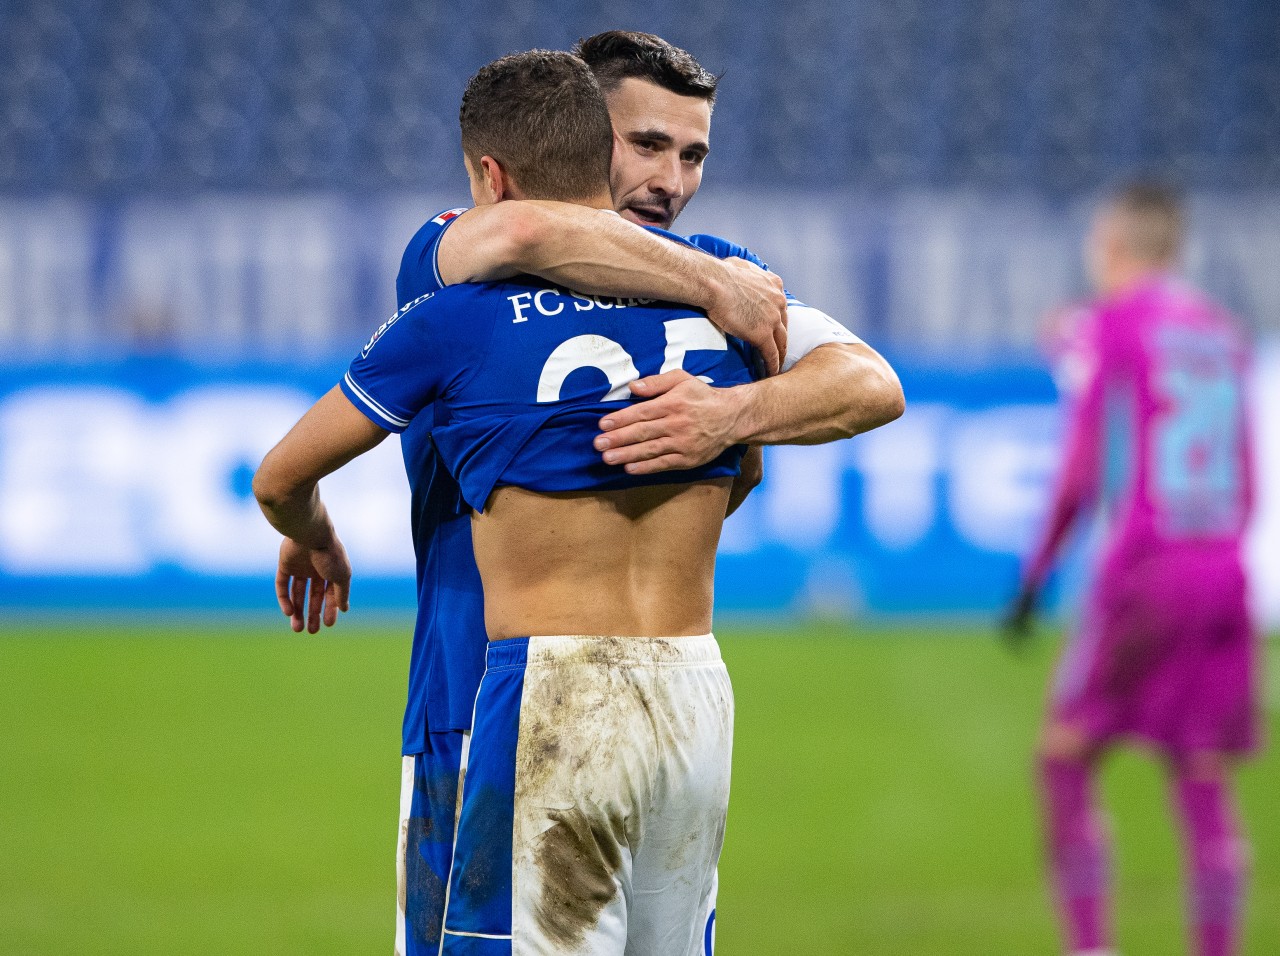 Beim FC Schalke 04 waren sie schon Teamkameraden, jetzt könnte Sead Kolasinac bei seinem neuen Klub auf einen ehemaligen Bekannten treffen.